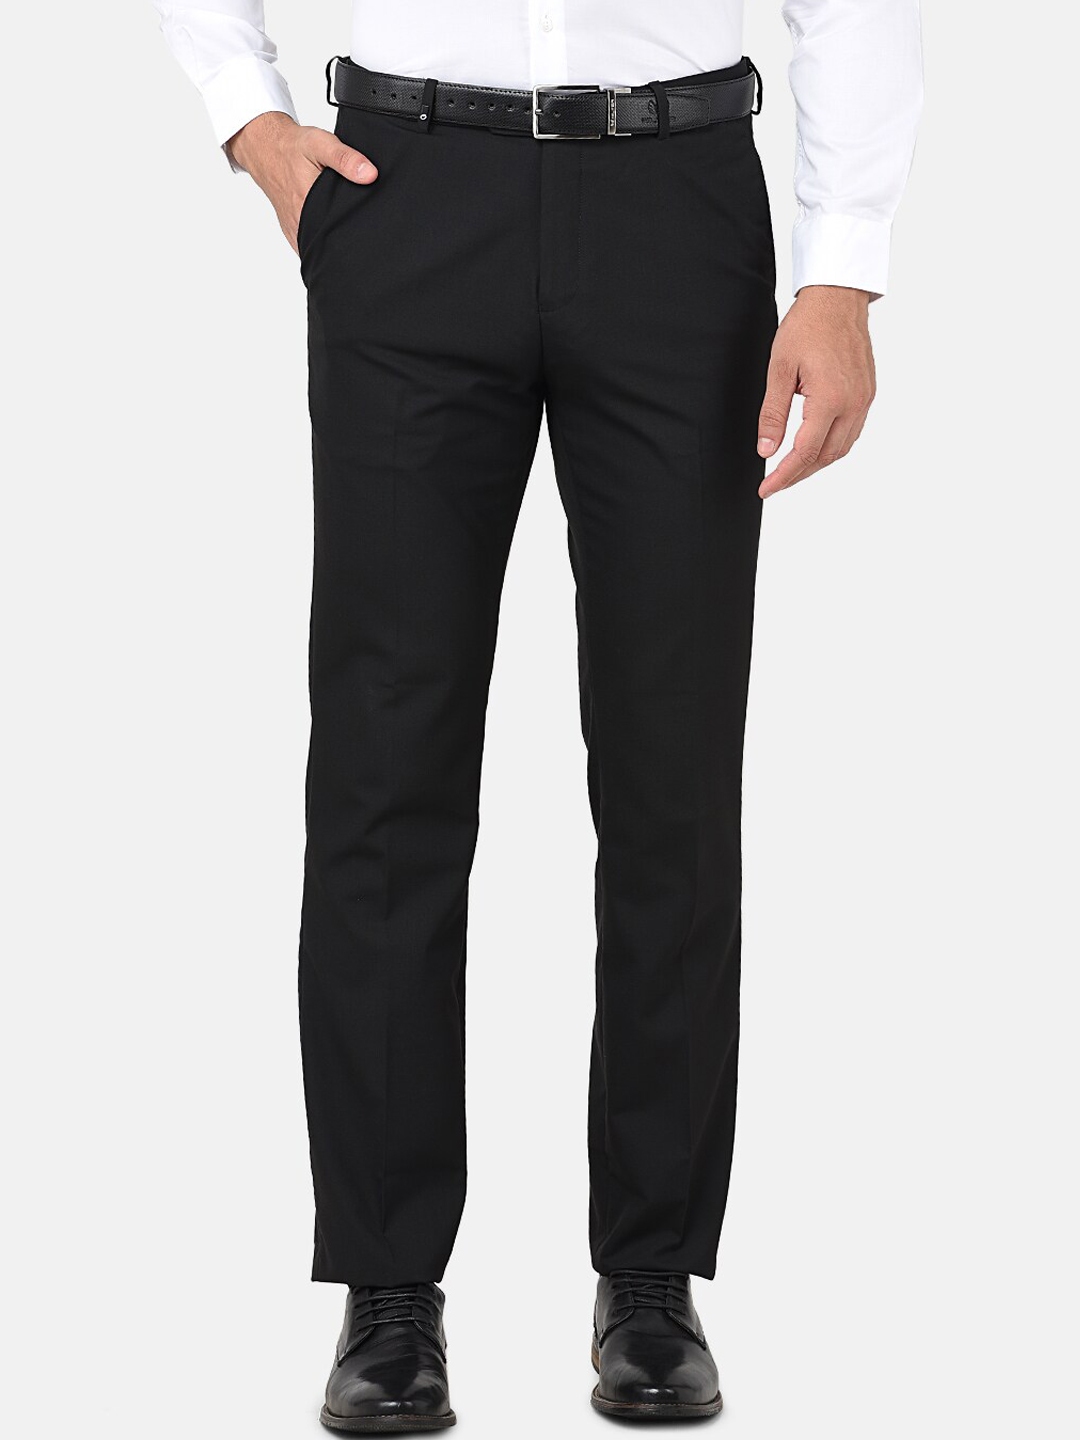 Buy Oxemberg Men Black Smart Slim Fit Wrinkle Free Formal Trousers ...